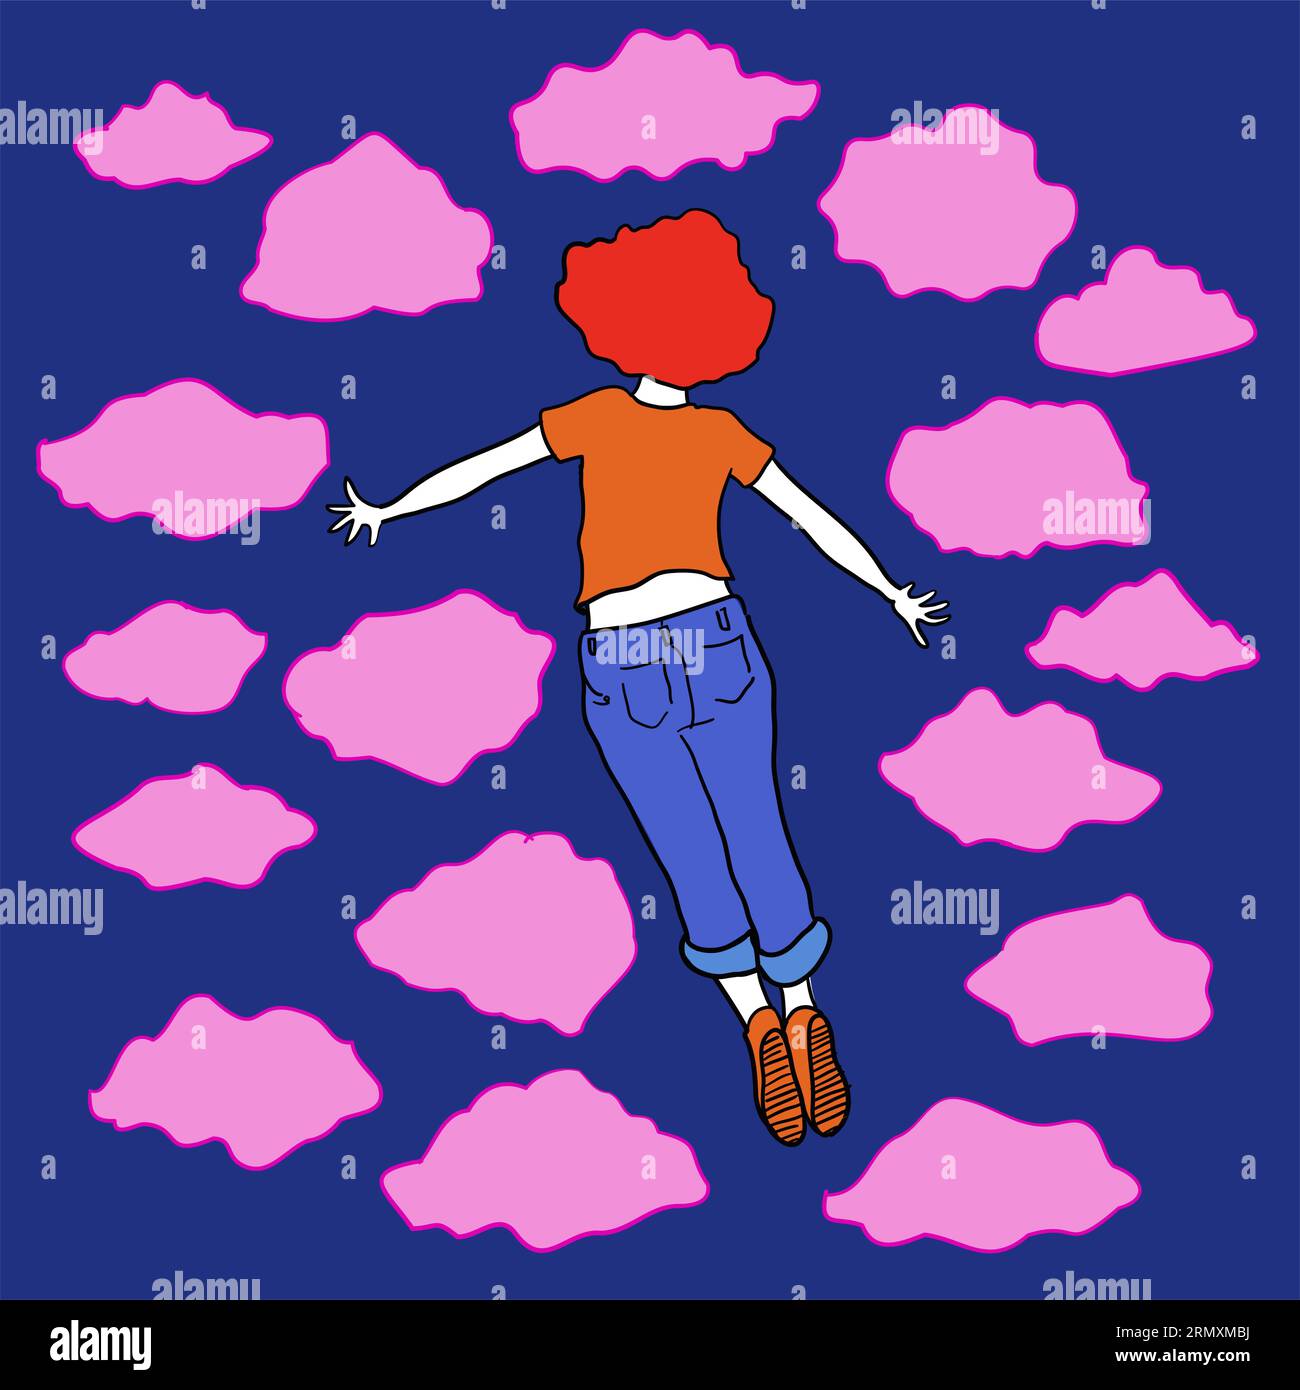 Illustrazione colorata di un giovane con la schiena volata nel cielo blu profondo e nuvole rosa Illustrazione Vettoriale